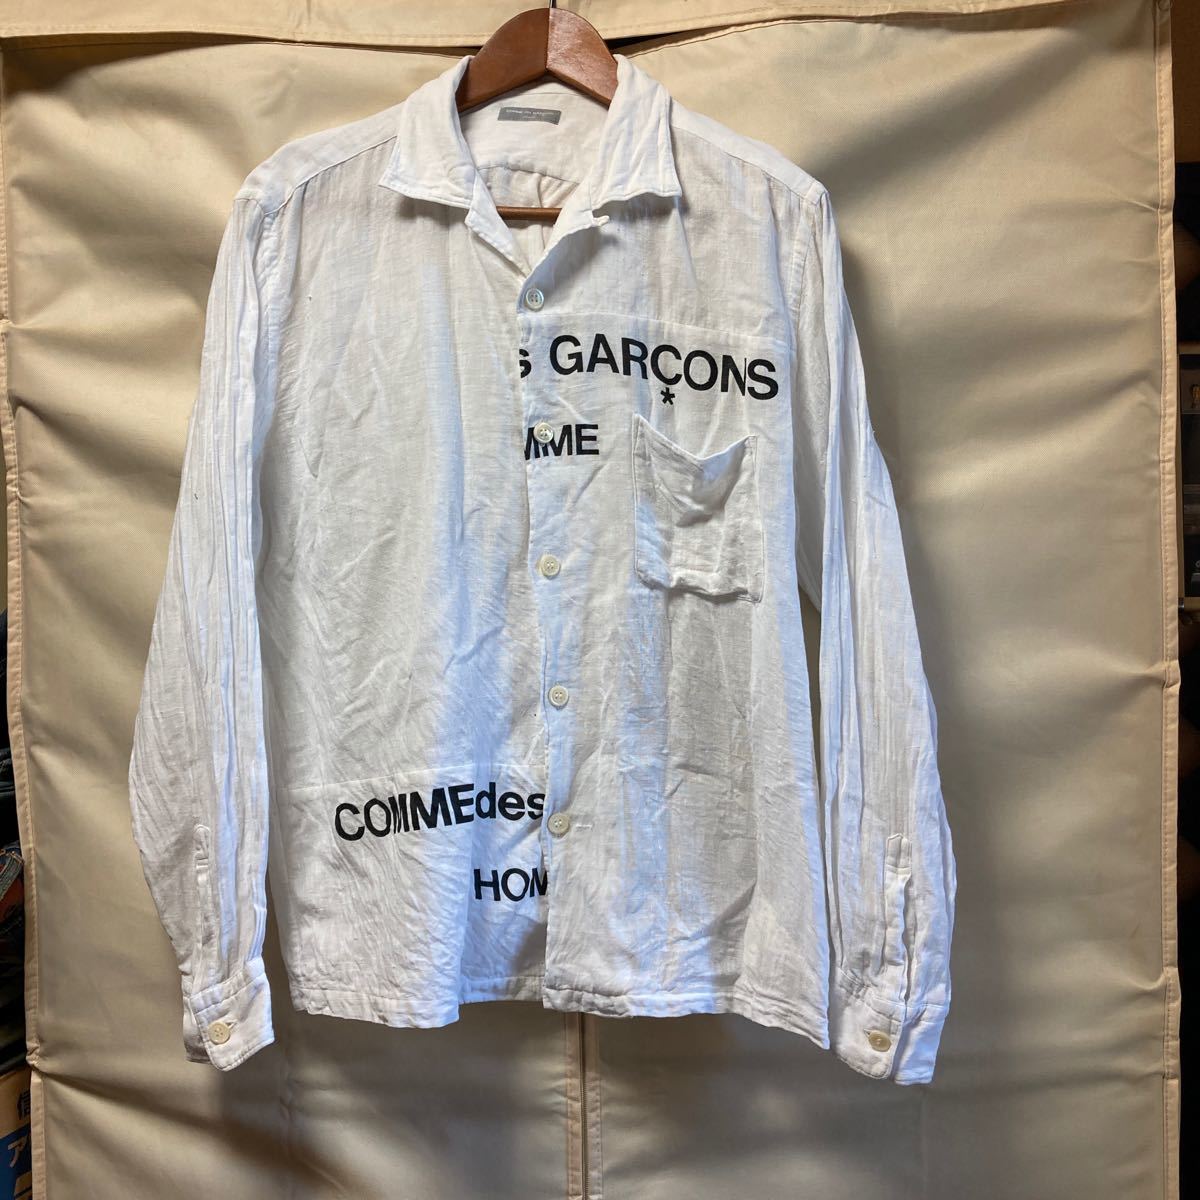 最も完璧な コムデギャルソンオム 再構築 ずらしロゴ長袖シャツ ホワイト 切り替え Mサイズ